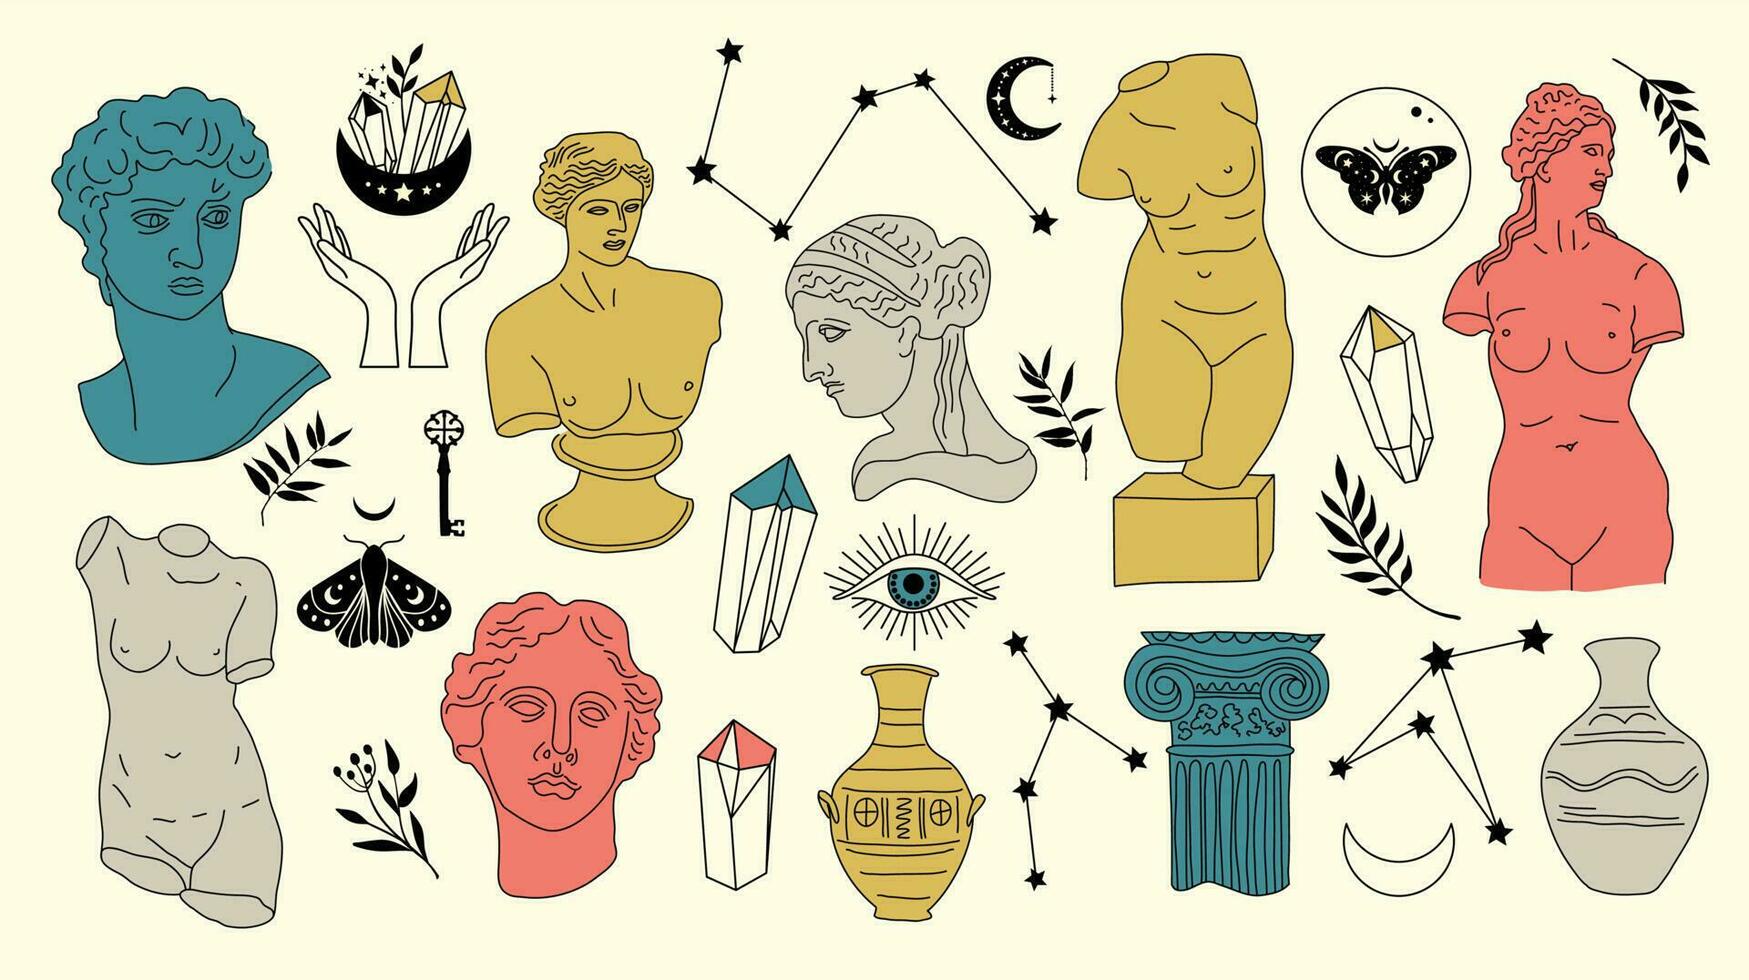 grekisk gammal skulptur mystiker uppsättning. hand dragen illustrationer av antik klassisk statyer i trendig bohemisk stil. boho tatuering konst. huvuden, gren, vas, kolumn, händer, kropp, stjärnor. vektor